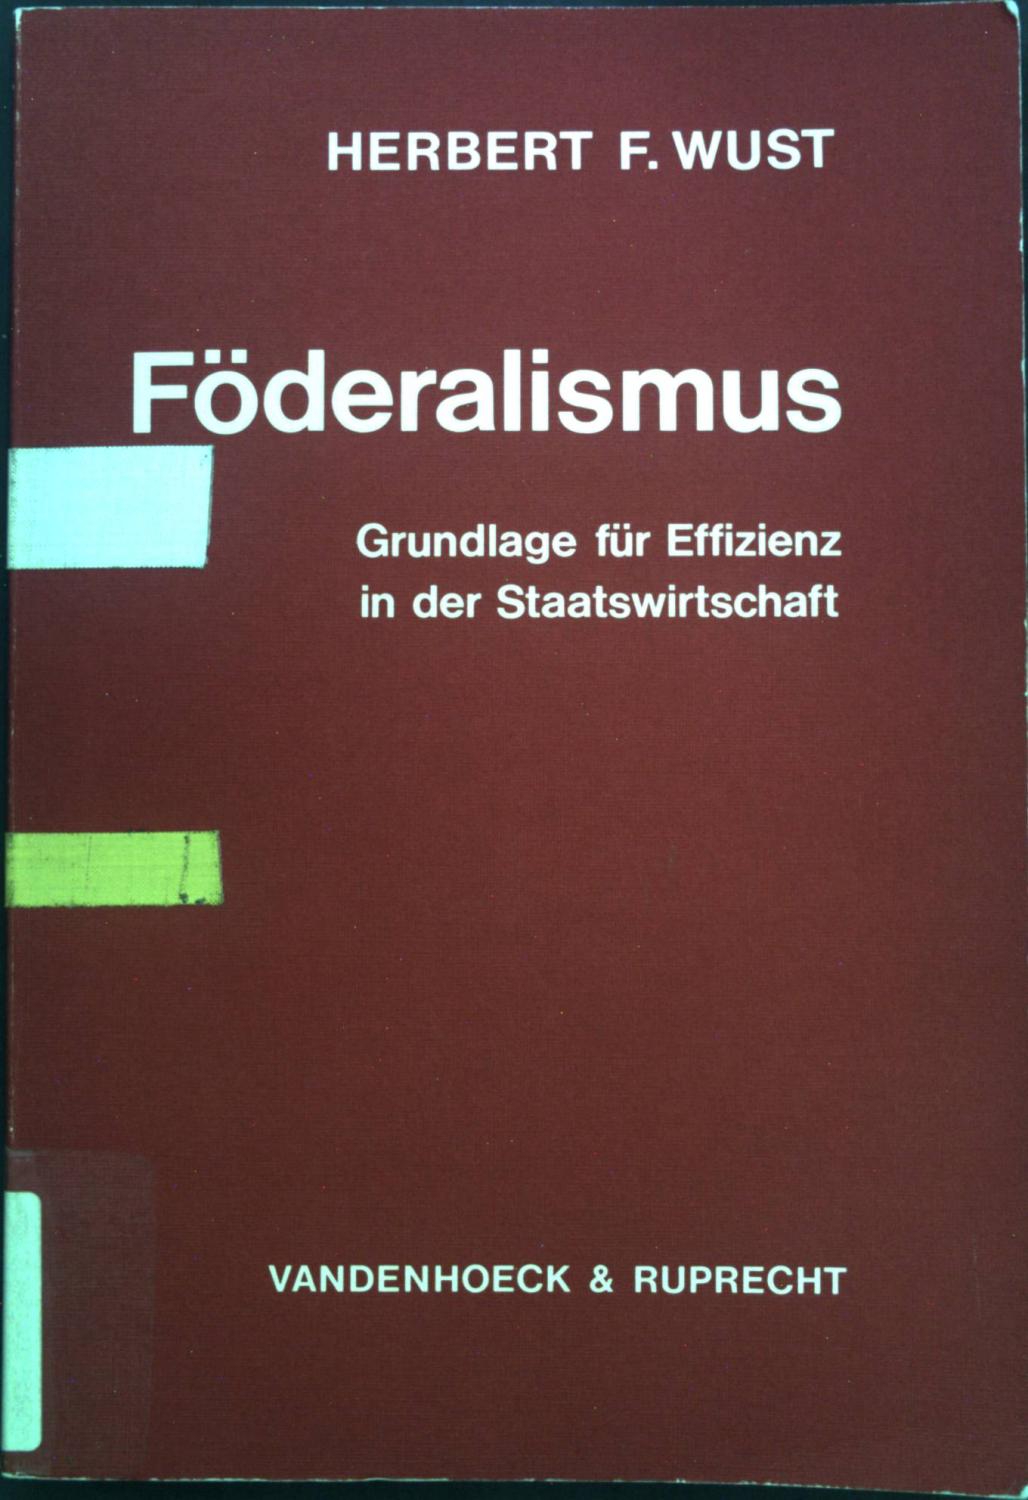 Föderalismus : Grundlagelage für Effizienz in d. Staatswirtschaft., Mit e. Einf. von Horst Claus Recktenwald, Abhandlungen zu den wirtschaftlichen Staatswissenschaften , 20